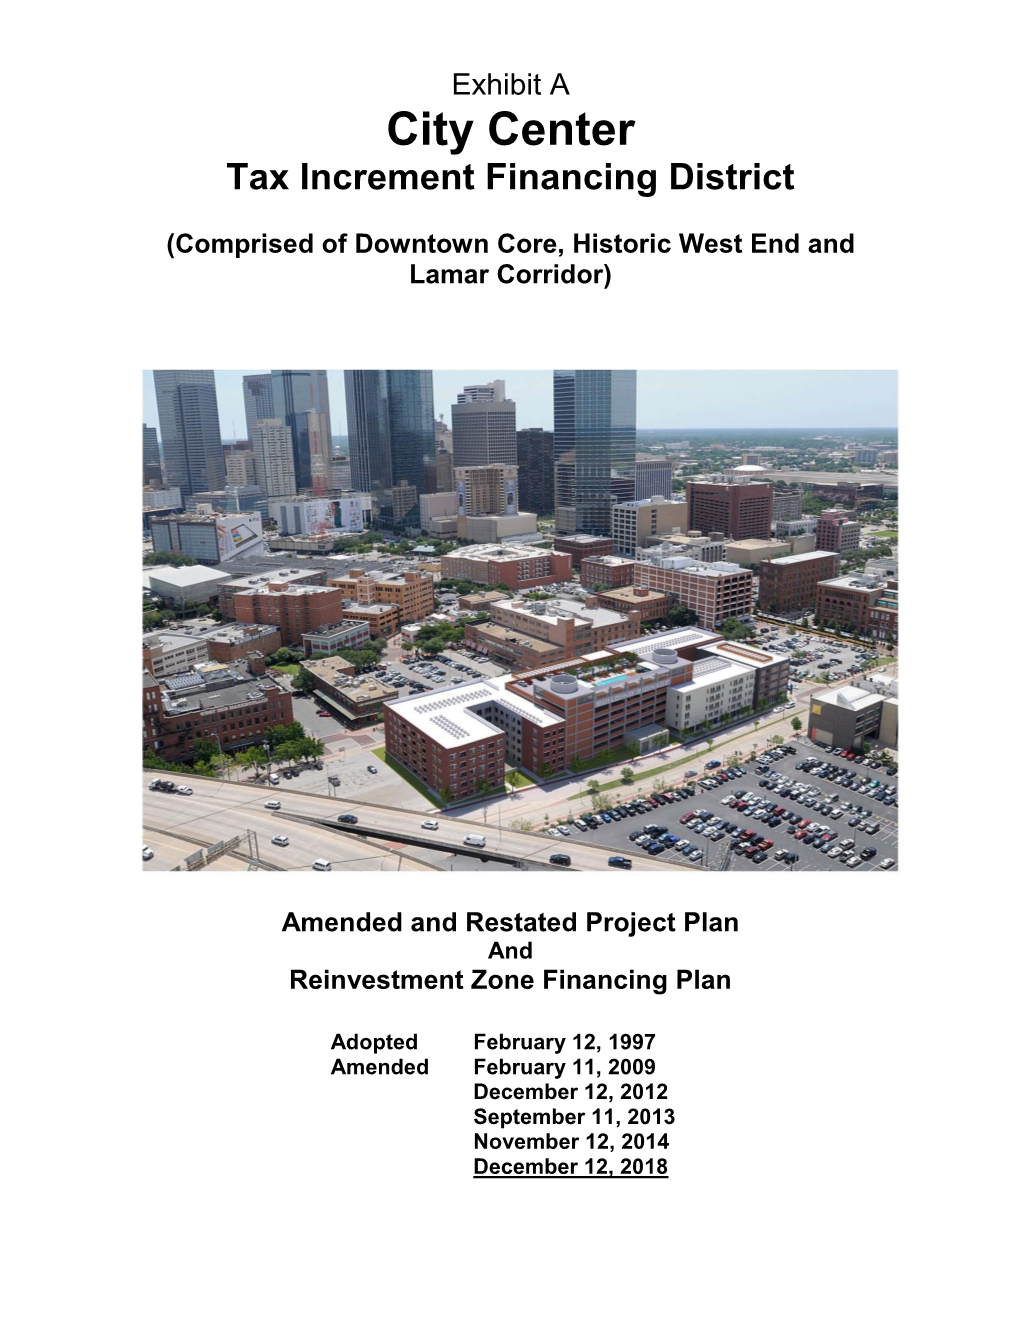 City Center TIF District Amended Plan 2018 (PDF)